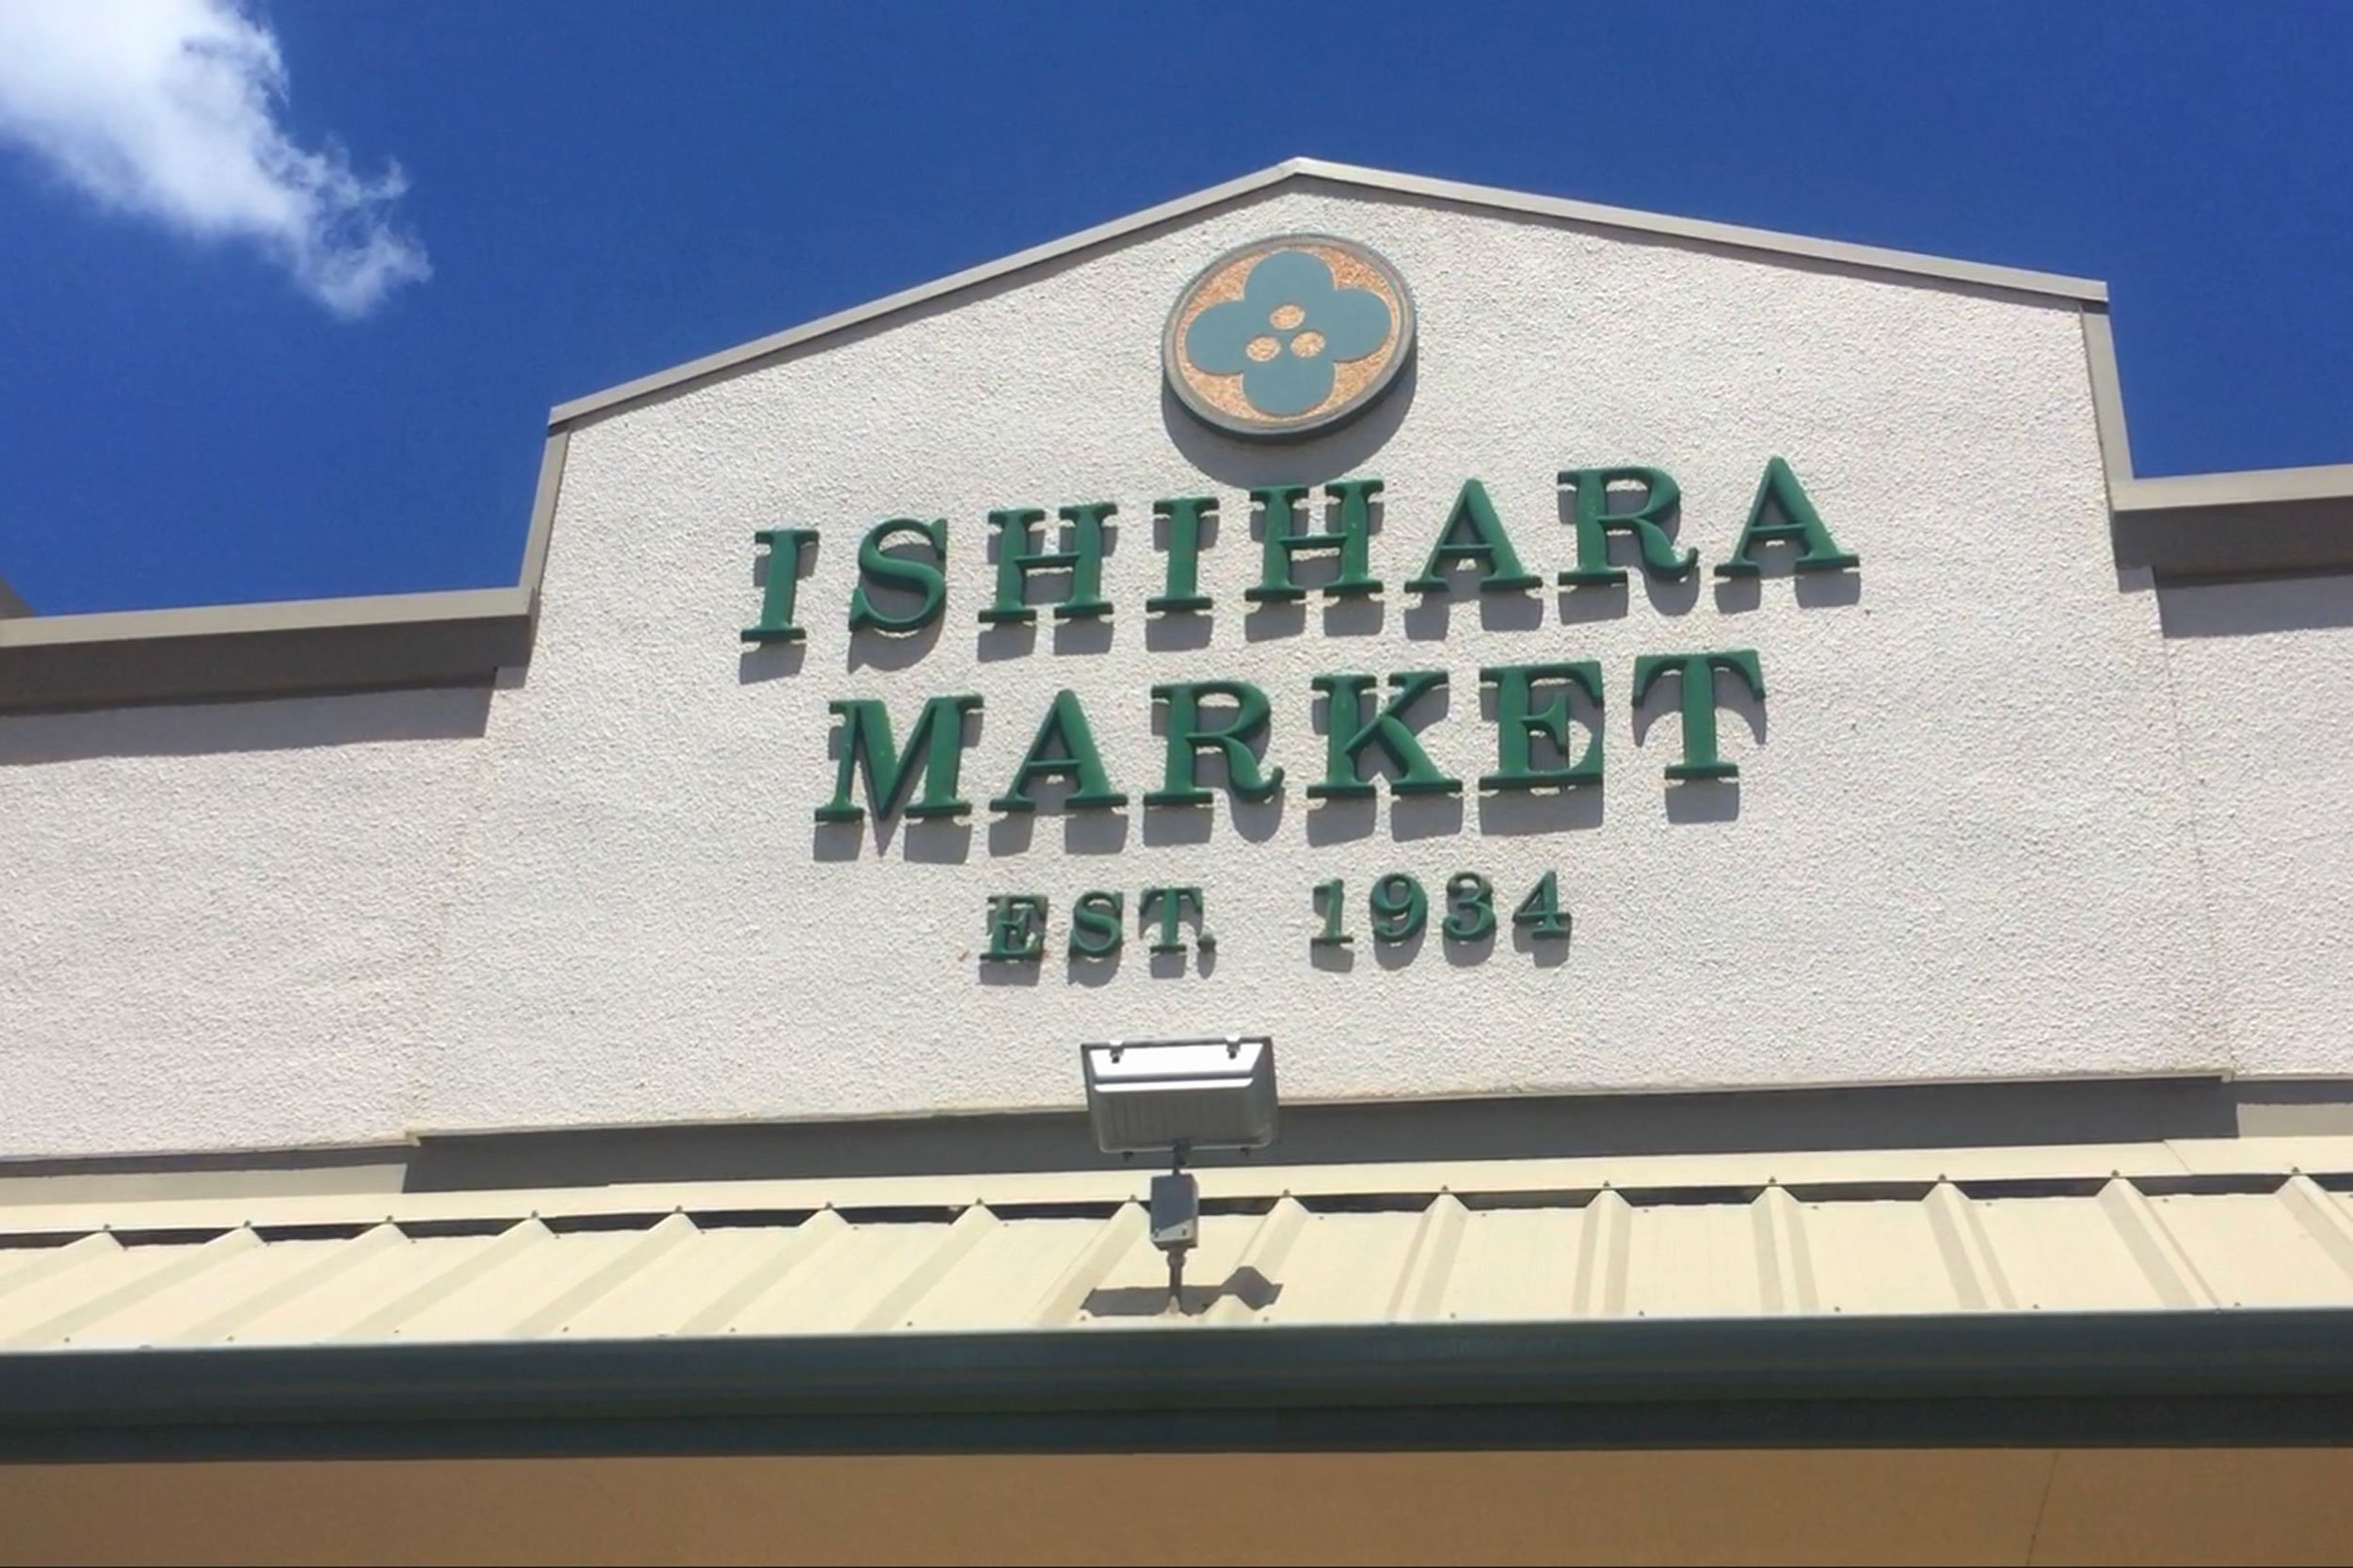 Ishihara Market